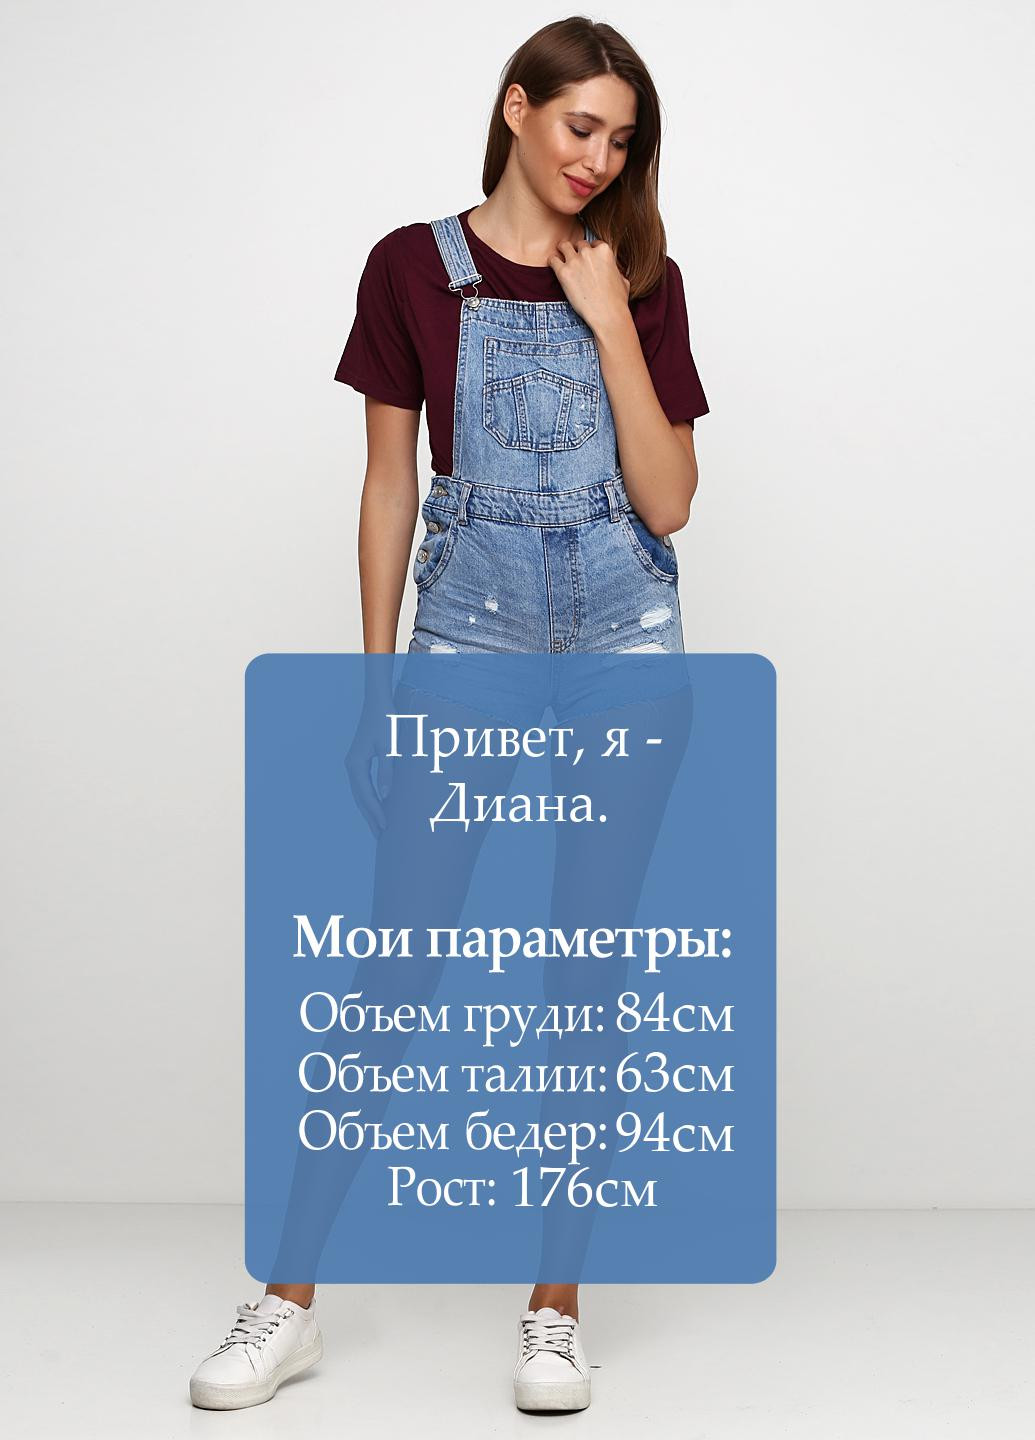 Комбинезон H&M комбинезон-шорты однотонный голубой денил